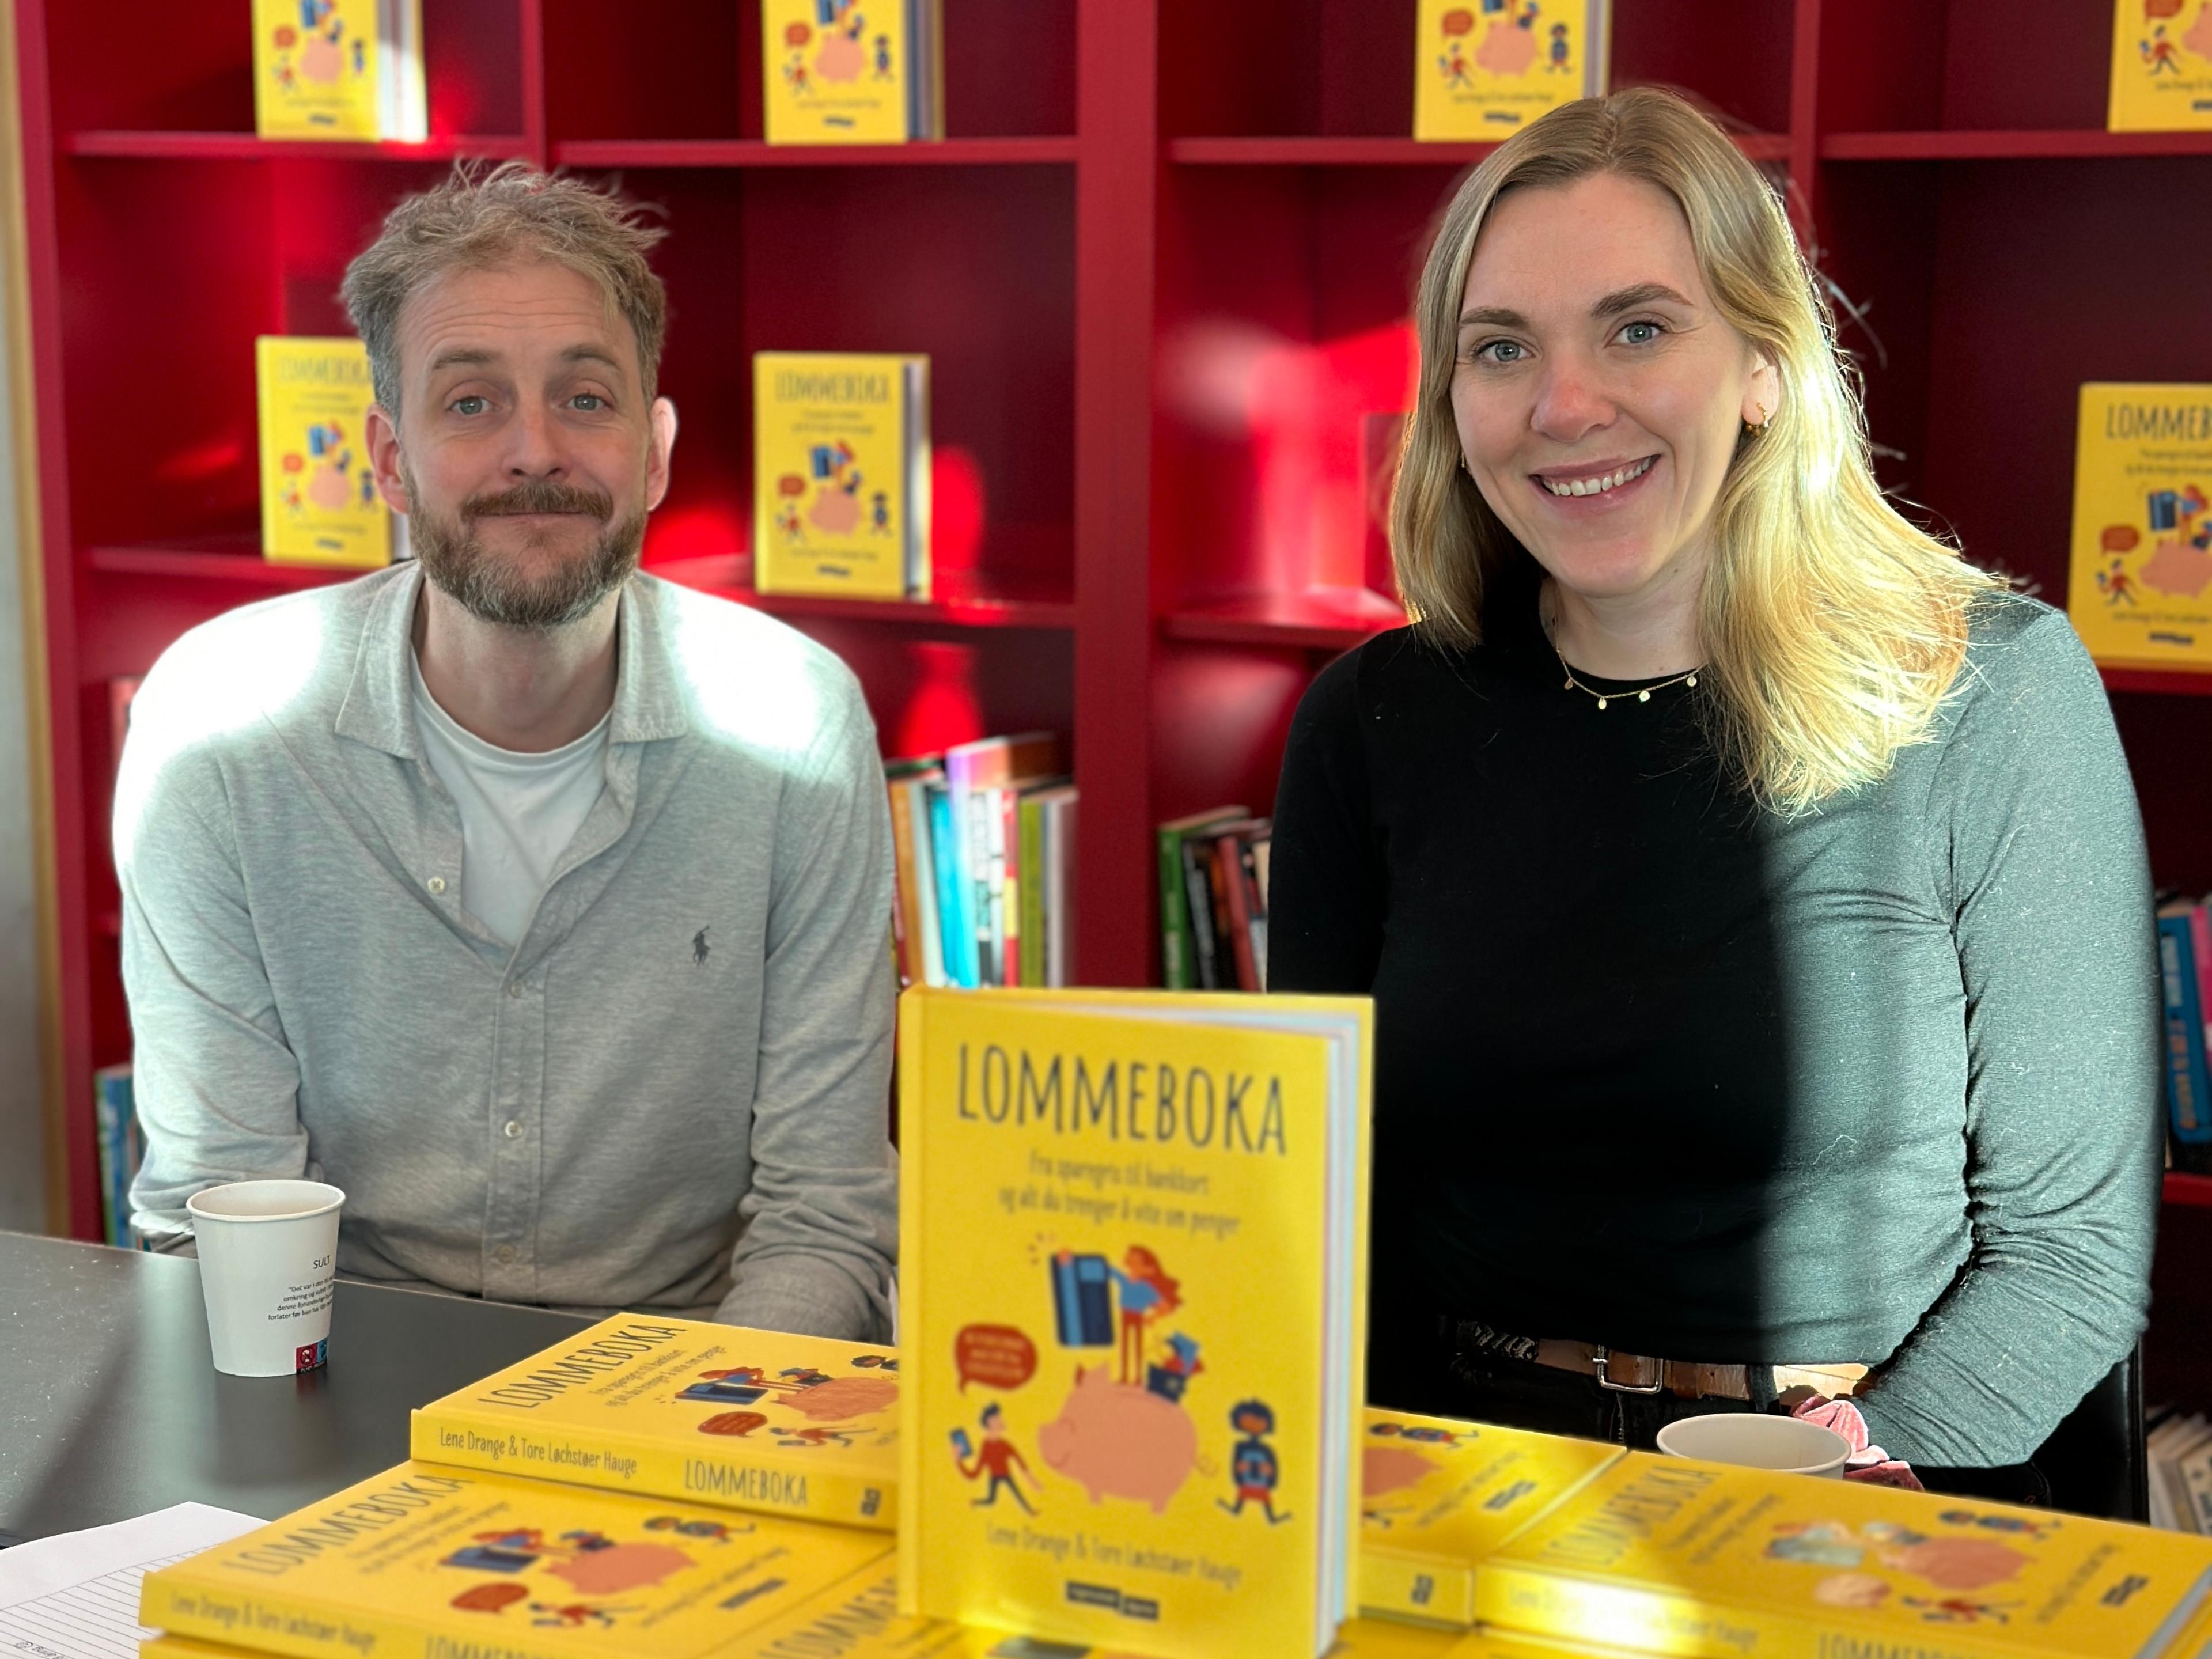 Lene Drange og Tore L. Hauge er aktuelle med barneboka "Lommeboka" - de ønsker å lære barn fra 9 års alderen om penger!